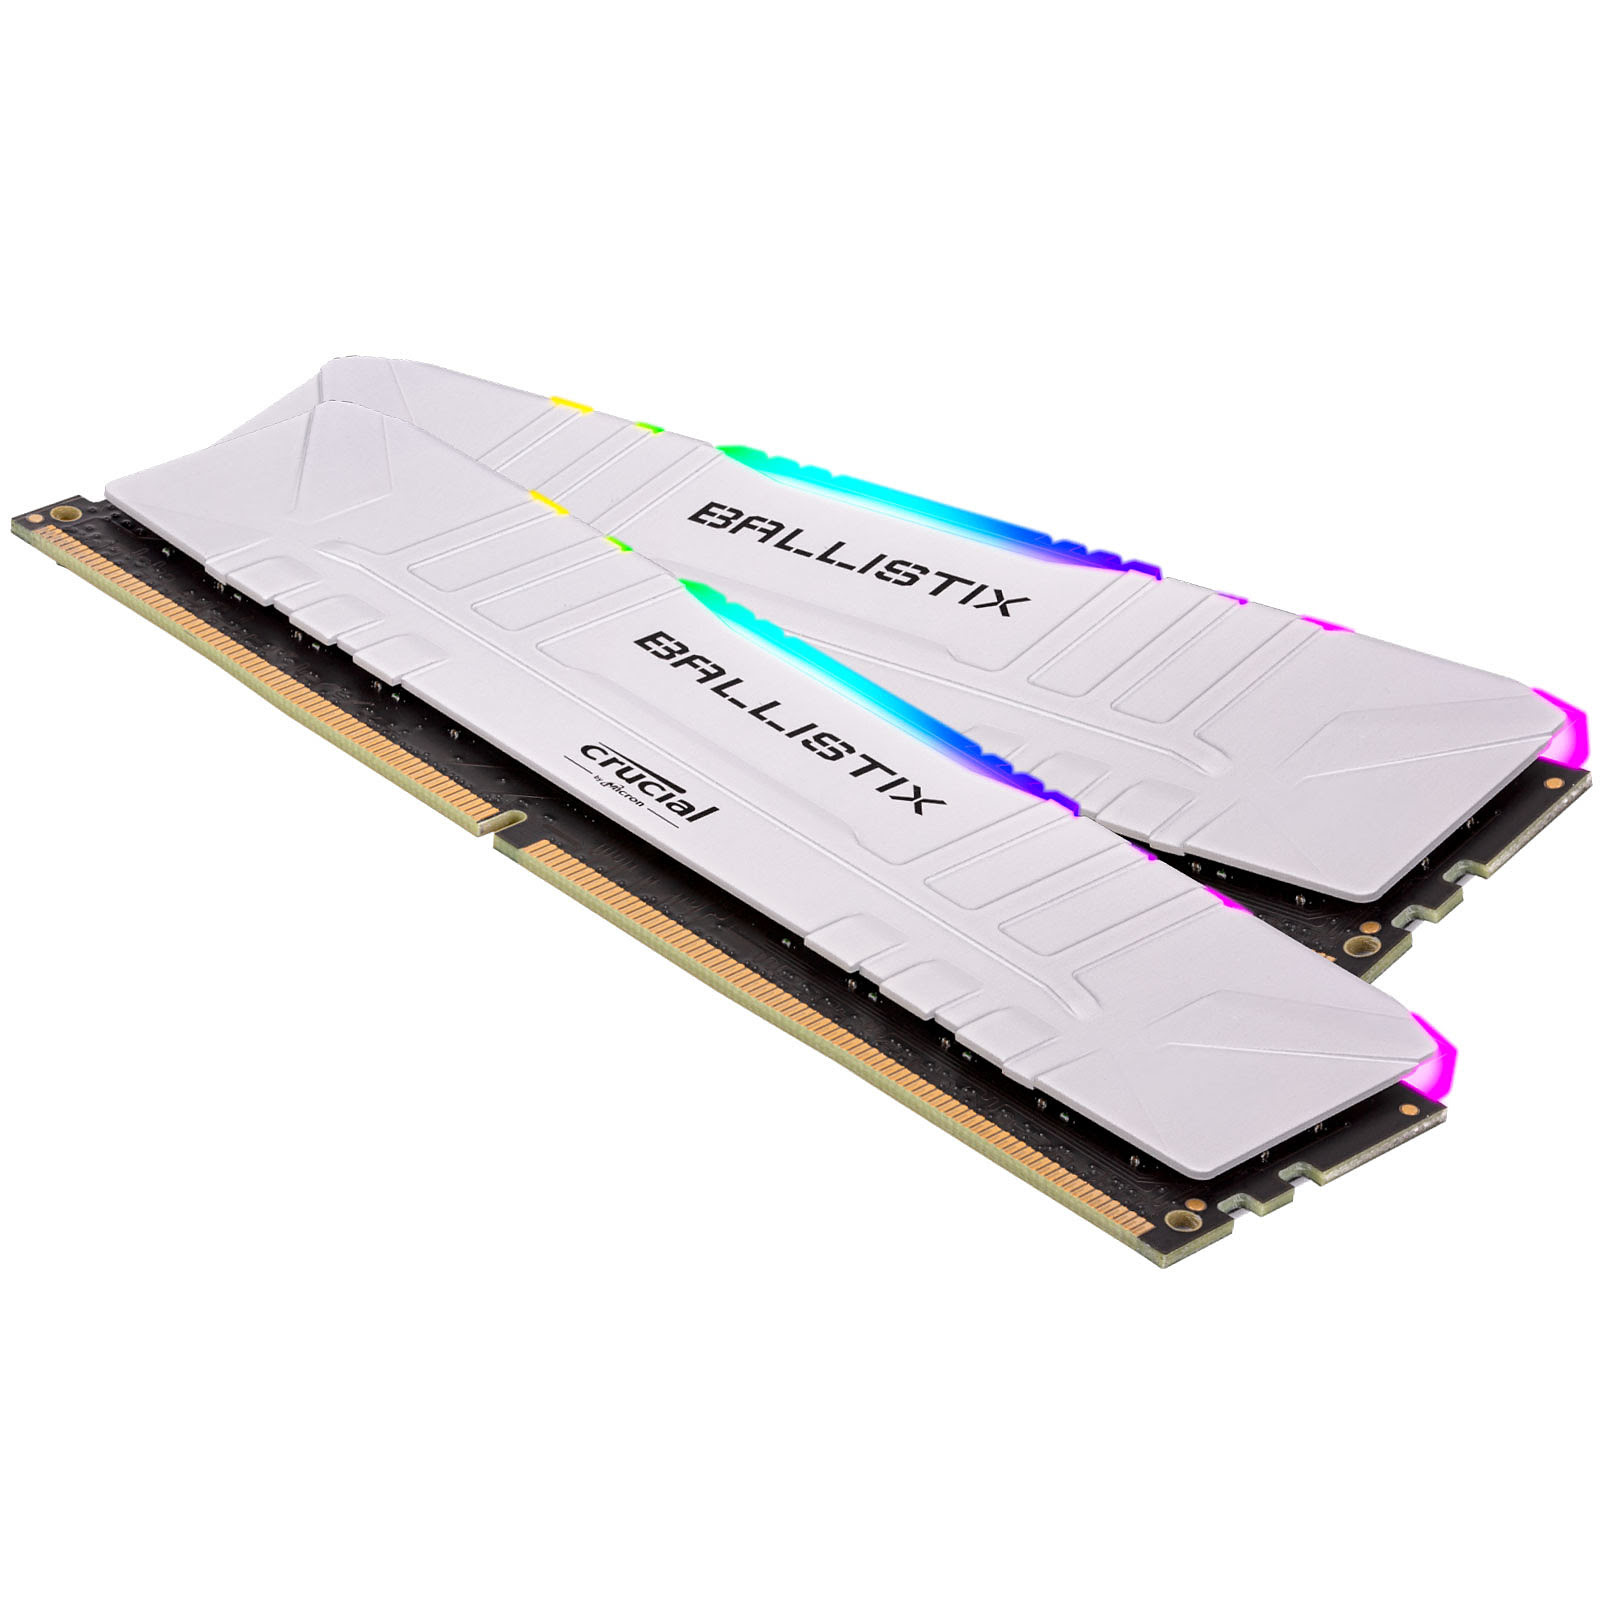 Ballistix RGB 8Go (1x8Go) DDR4 3000MHz - Mémoire PC Ballistix sur Cybertek.fr - 0